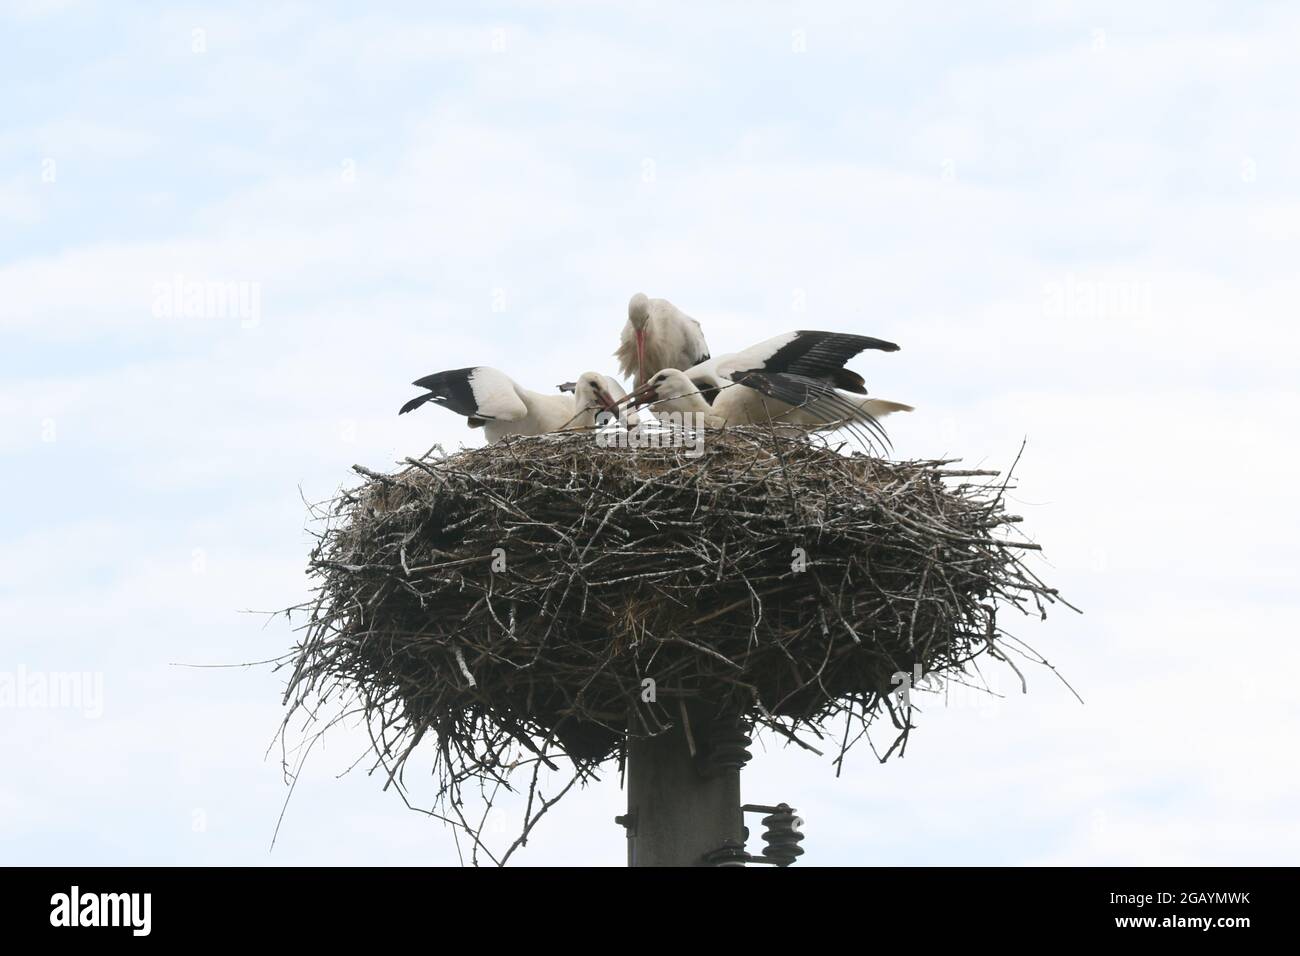 08/01/2021, Germany, Brandenburg, Ihlow ( Oberbarnim). Young storks feeding in stork nest. Stock Photo